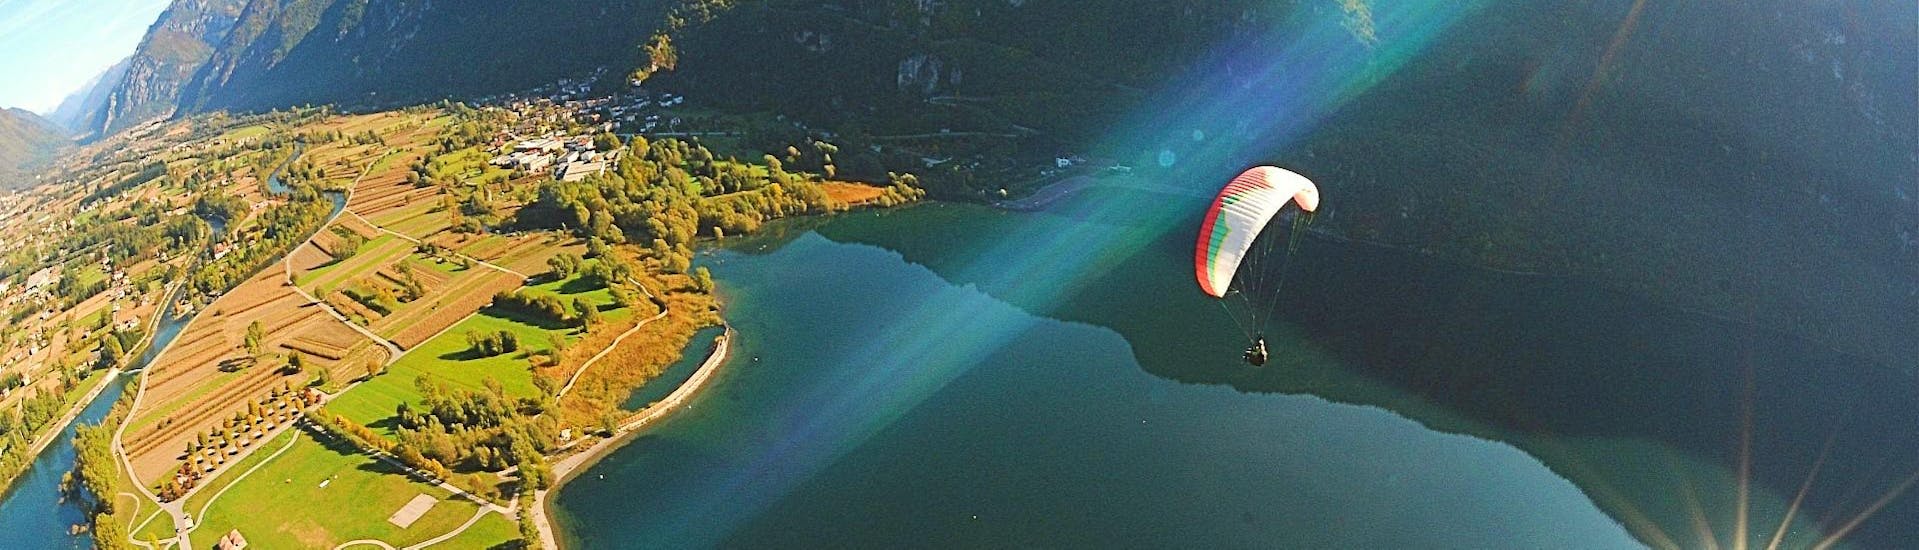 Vista de un vuelo en parapente biplaza sobre el maravilloso lago Idro durante un vuelo con Trentino Adventures.